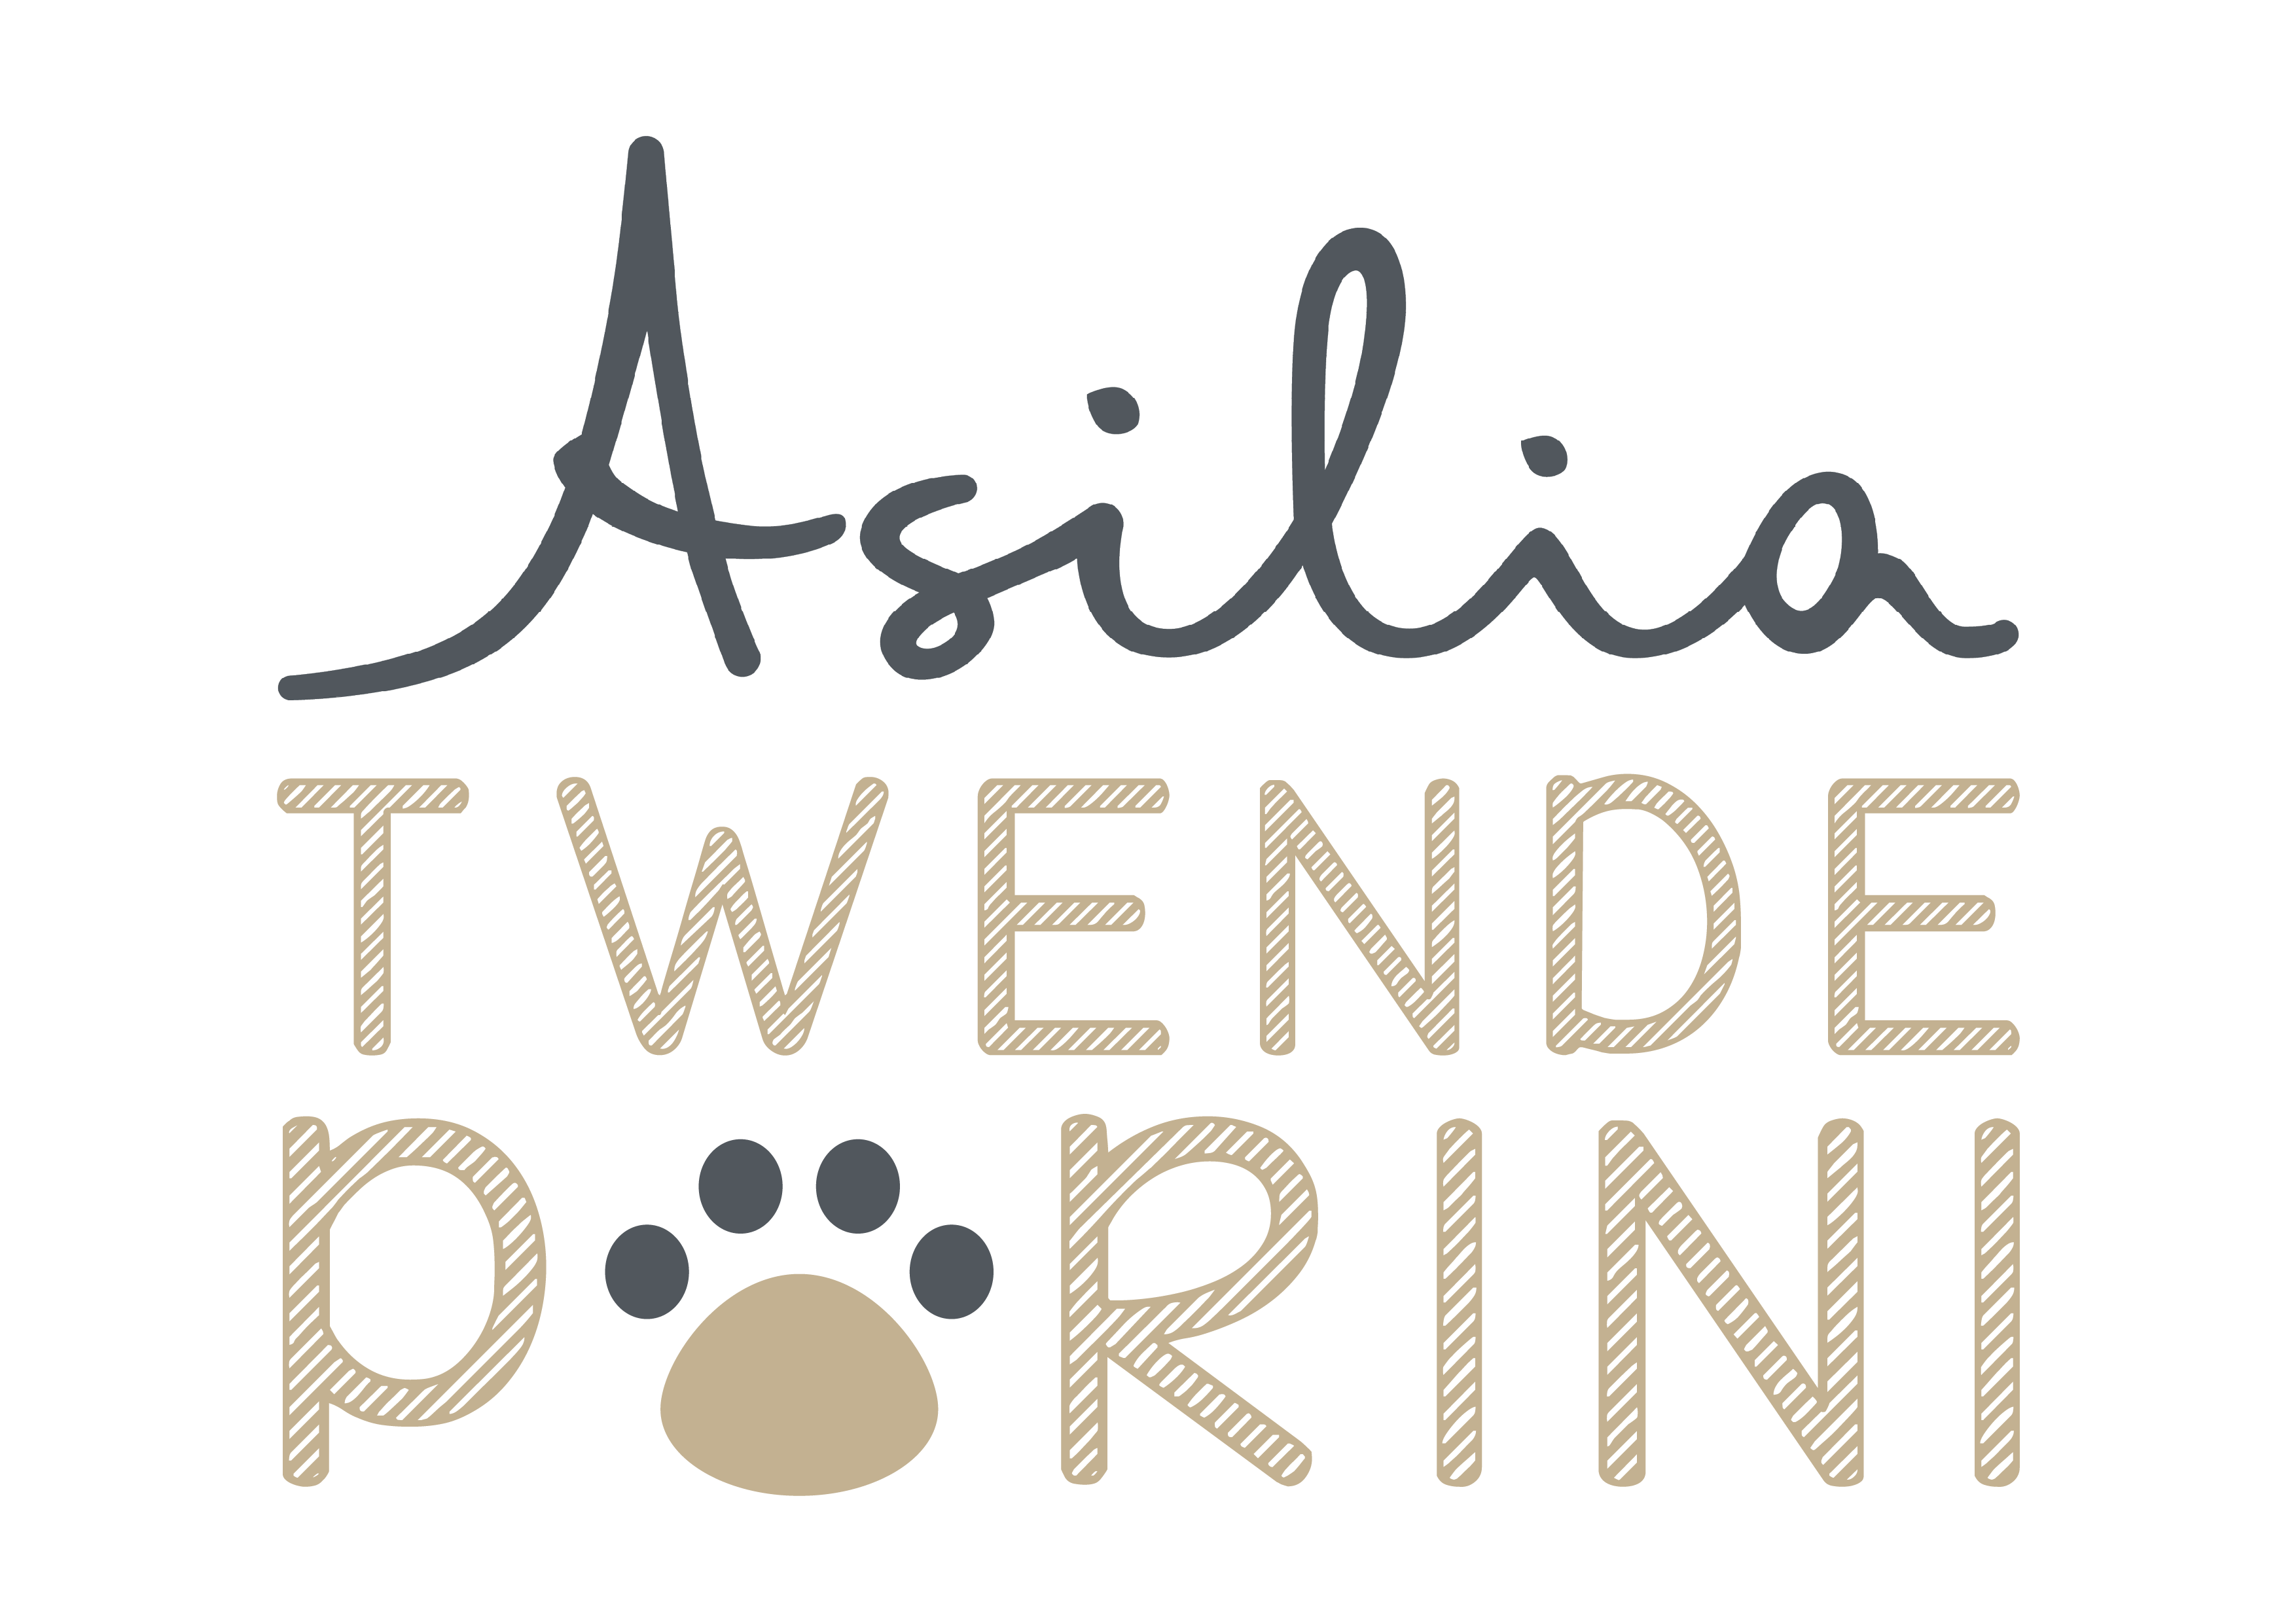 The Asilia Twende Porini logo